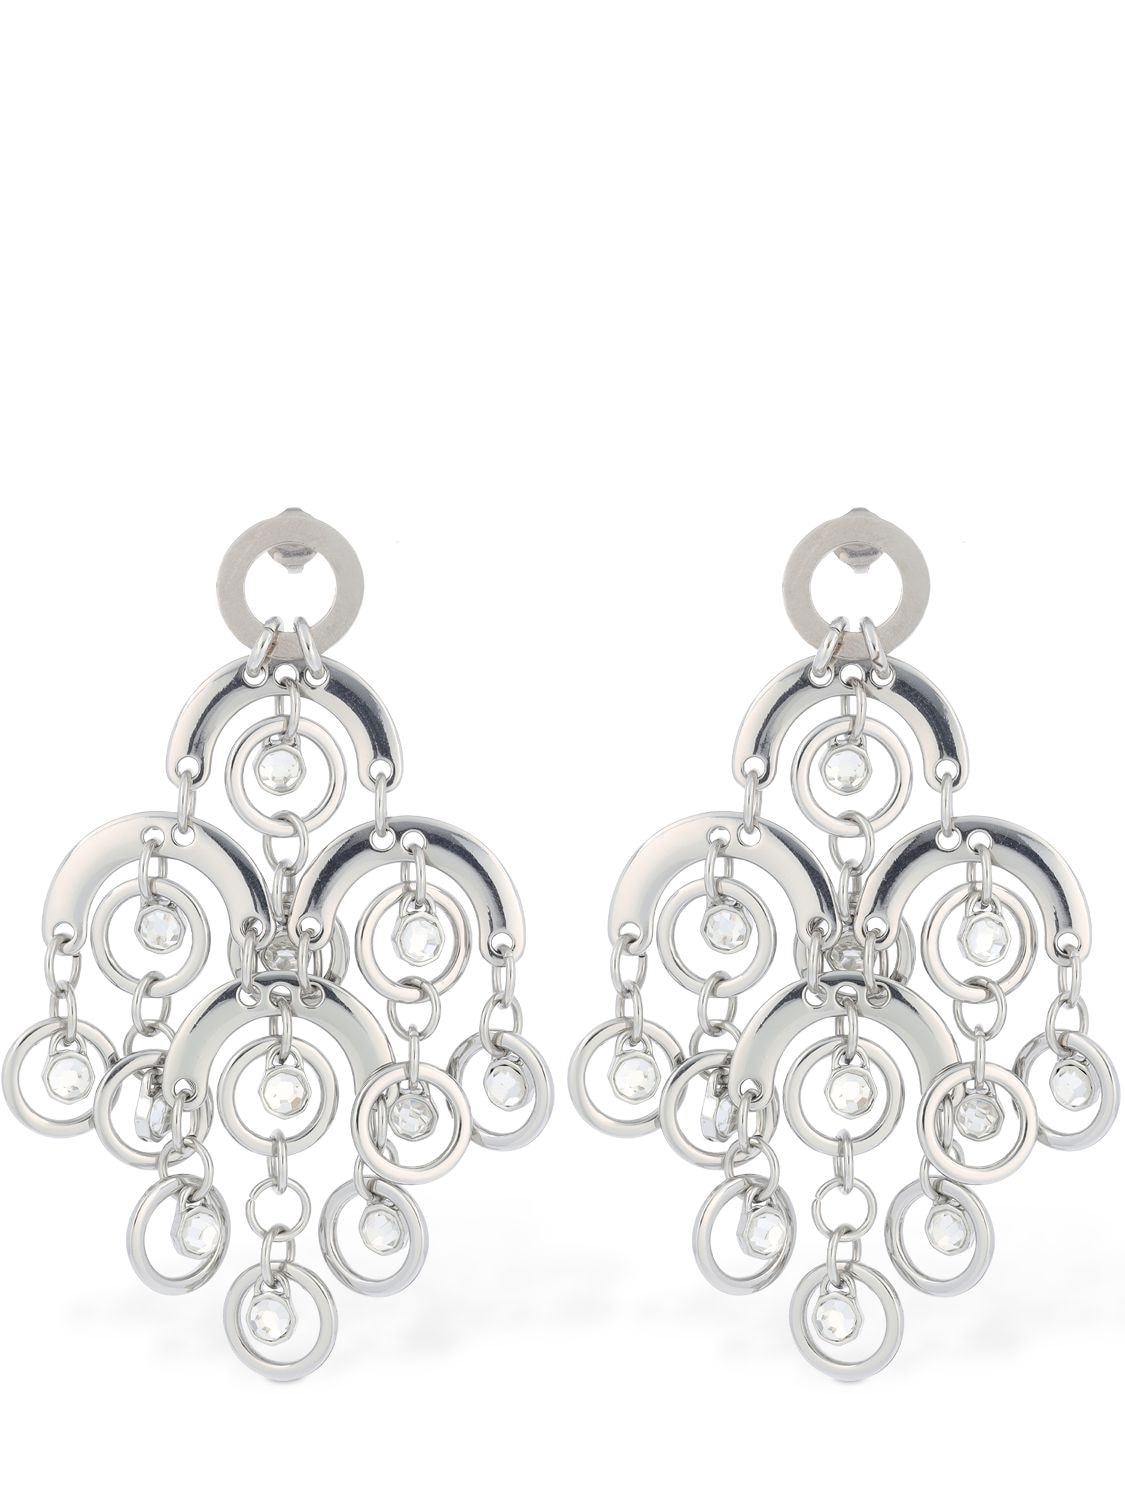 Image of Sphere Crystal Chandelier Earrings